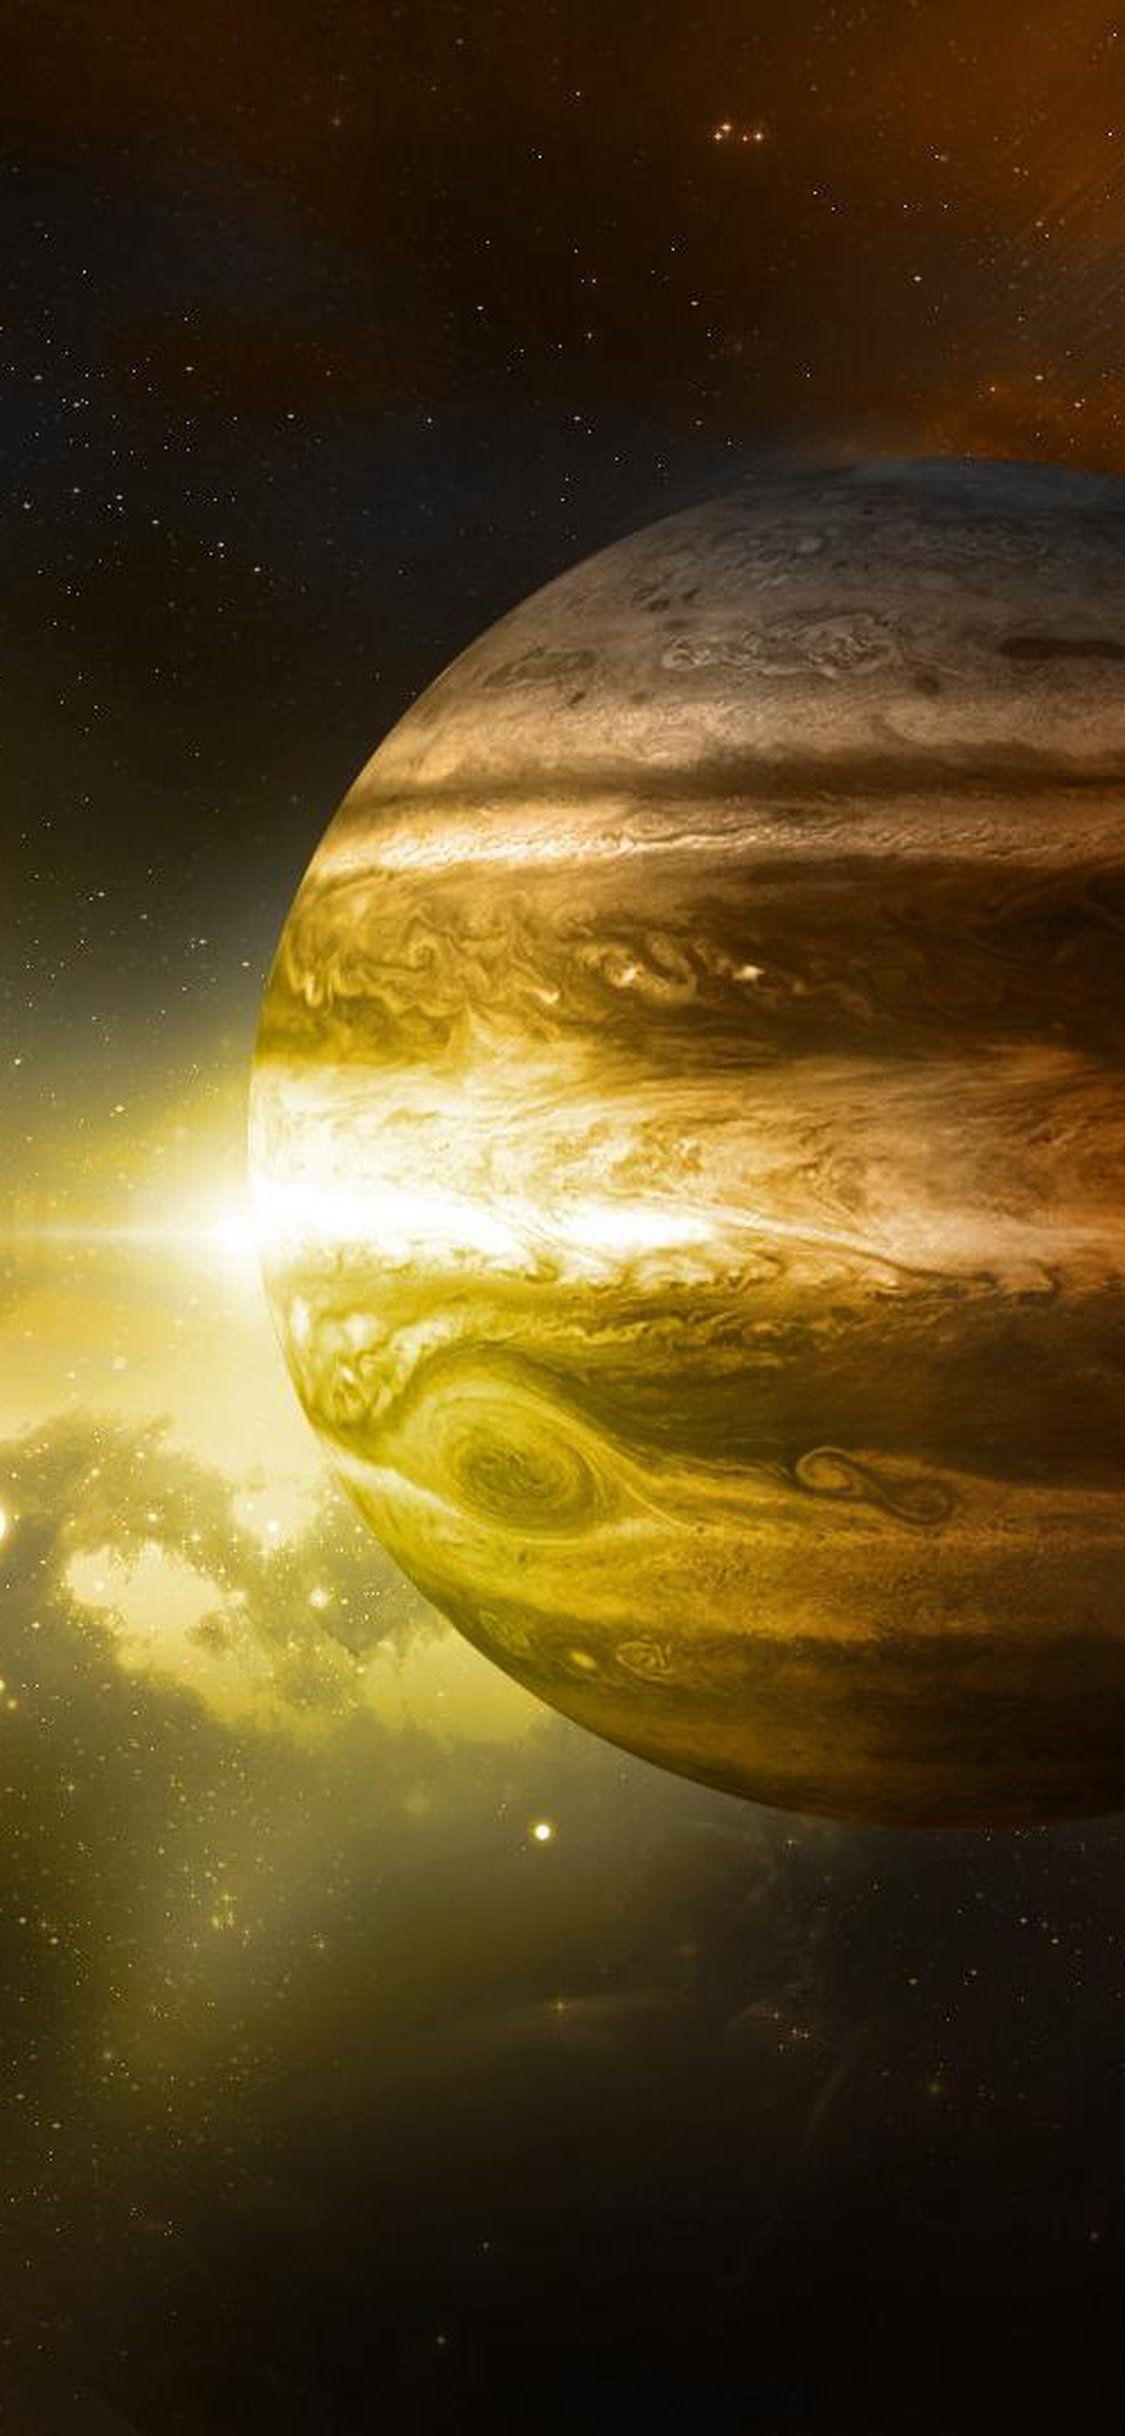  Jupiter  4K  Wallpapers  Top Free Jupiter  4K  Backgrounds  